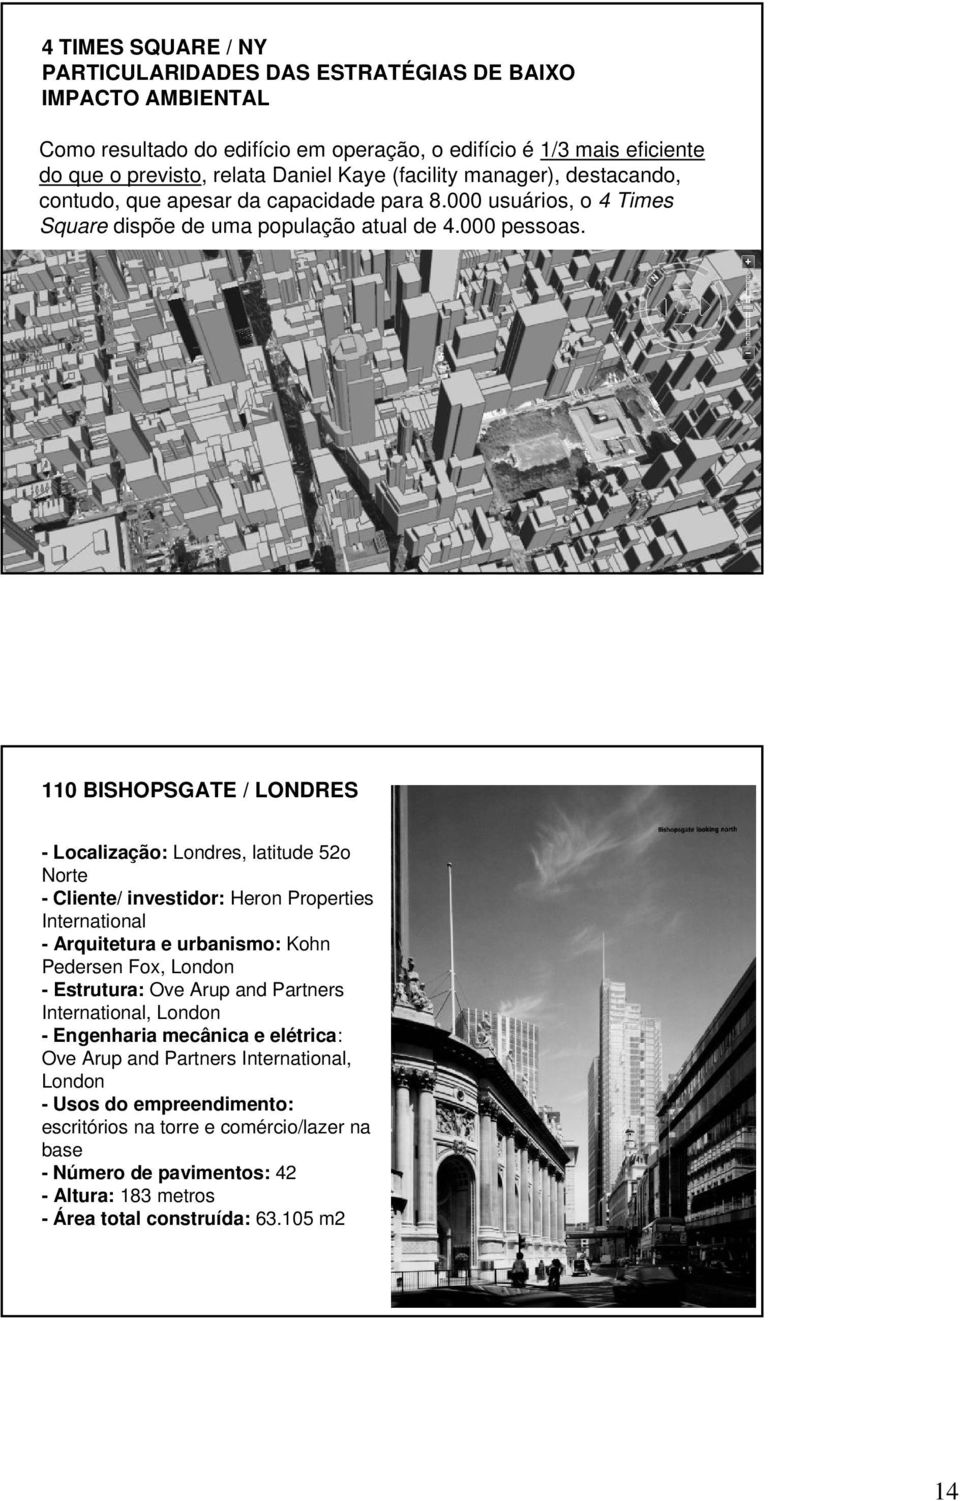 110 BISHOPSGATE / LONDRES - Localização: Londres, latitude 52o Norte - Cliente/ investidor: Heron Properties International - Arquitetura e urbanismo: Kohn Pedersen Fox, London - Estrutura: Ove Arup